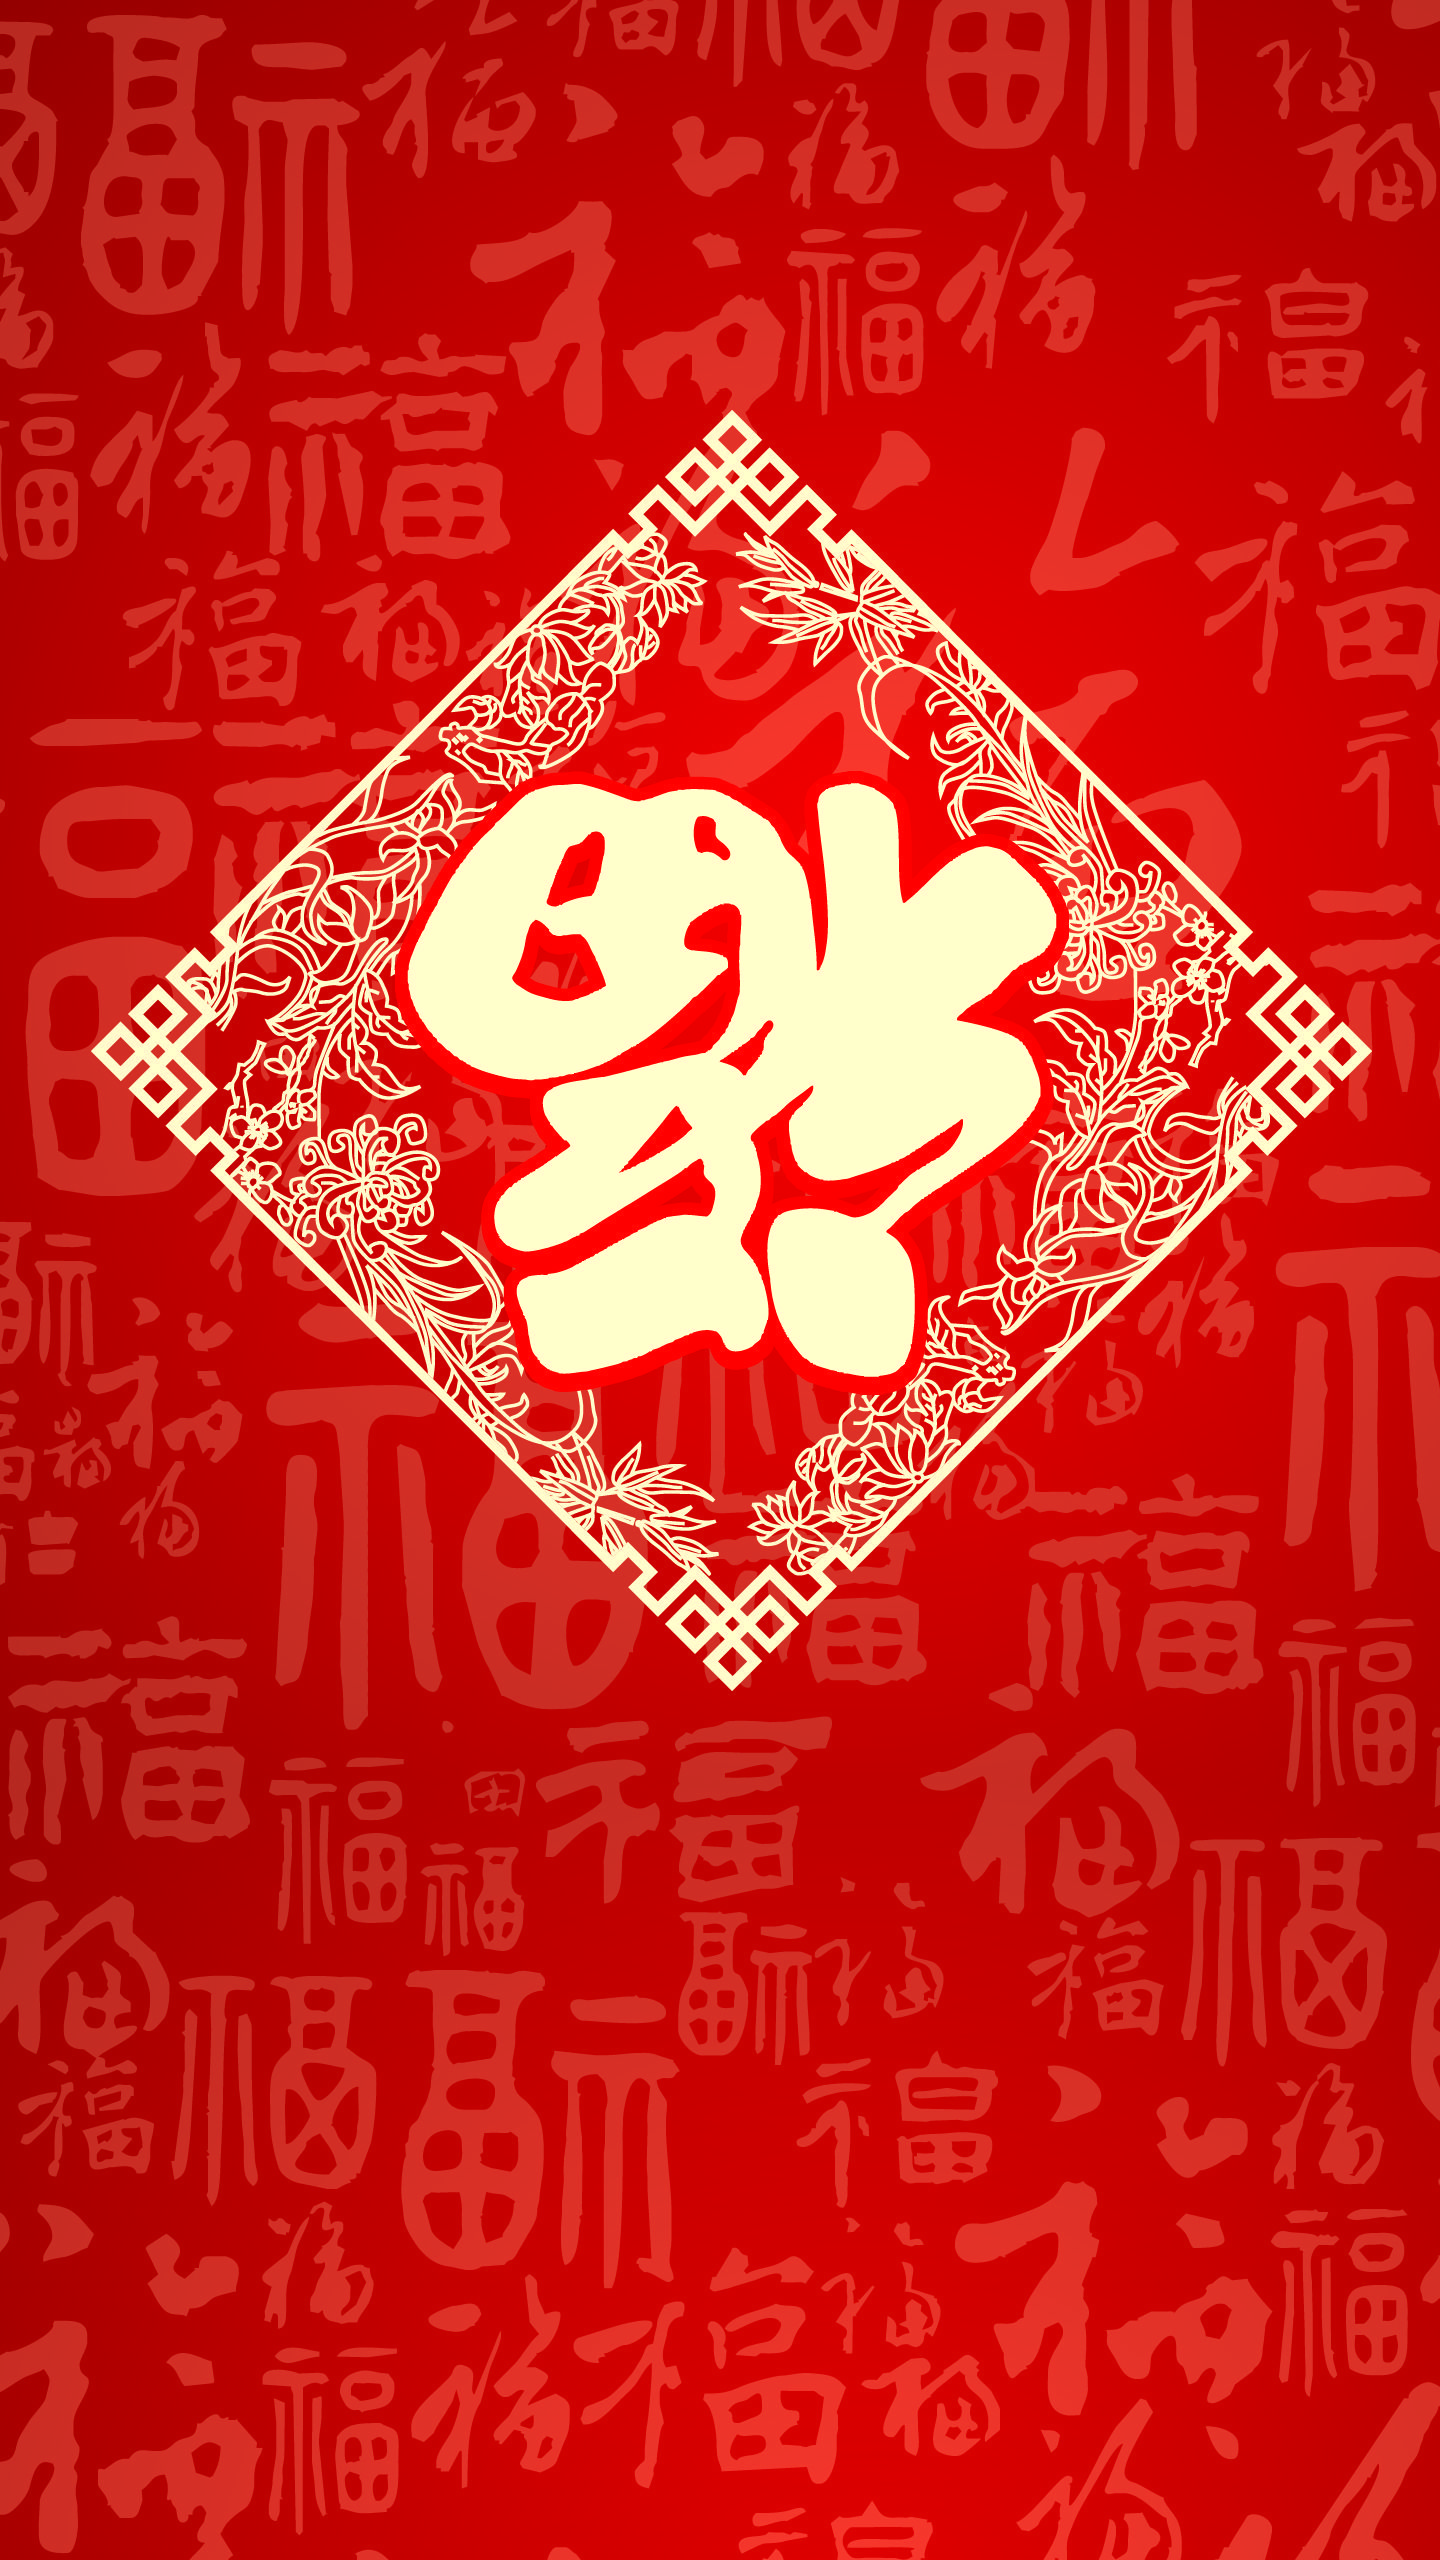 Tết Trung Quốc là một trong những dịp lễ trọng đại nhất trong năm. Hãy tạo sự khác biệt và chuẩn bị cho mùa Tết với ảnh nền Tết Trung Quốc cho chiếc iPhone của bạn. Wallpaper Cave cung cấp nhiều mẫu mã đầy màu sắc và ý nghĩa để bạn lựa chọn.